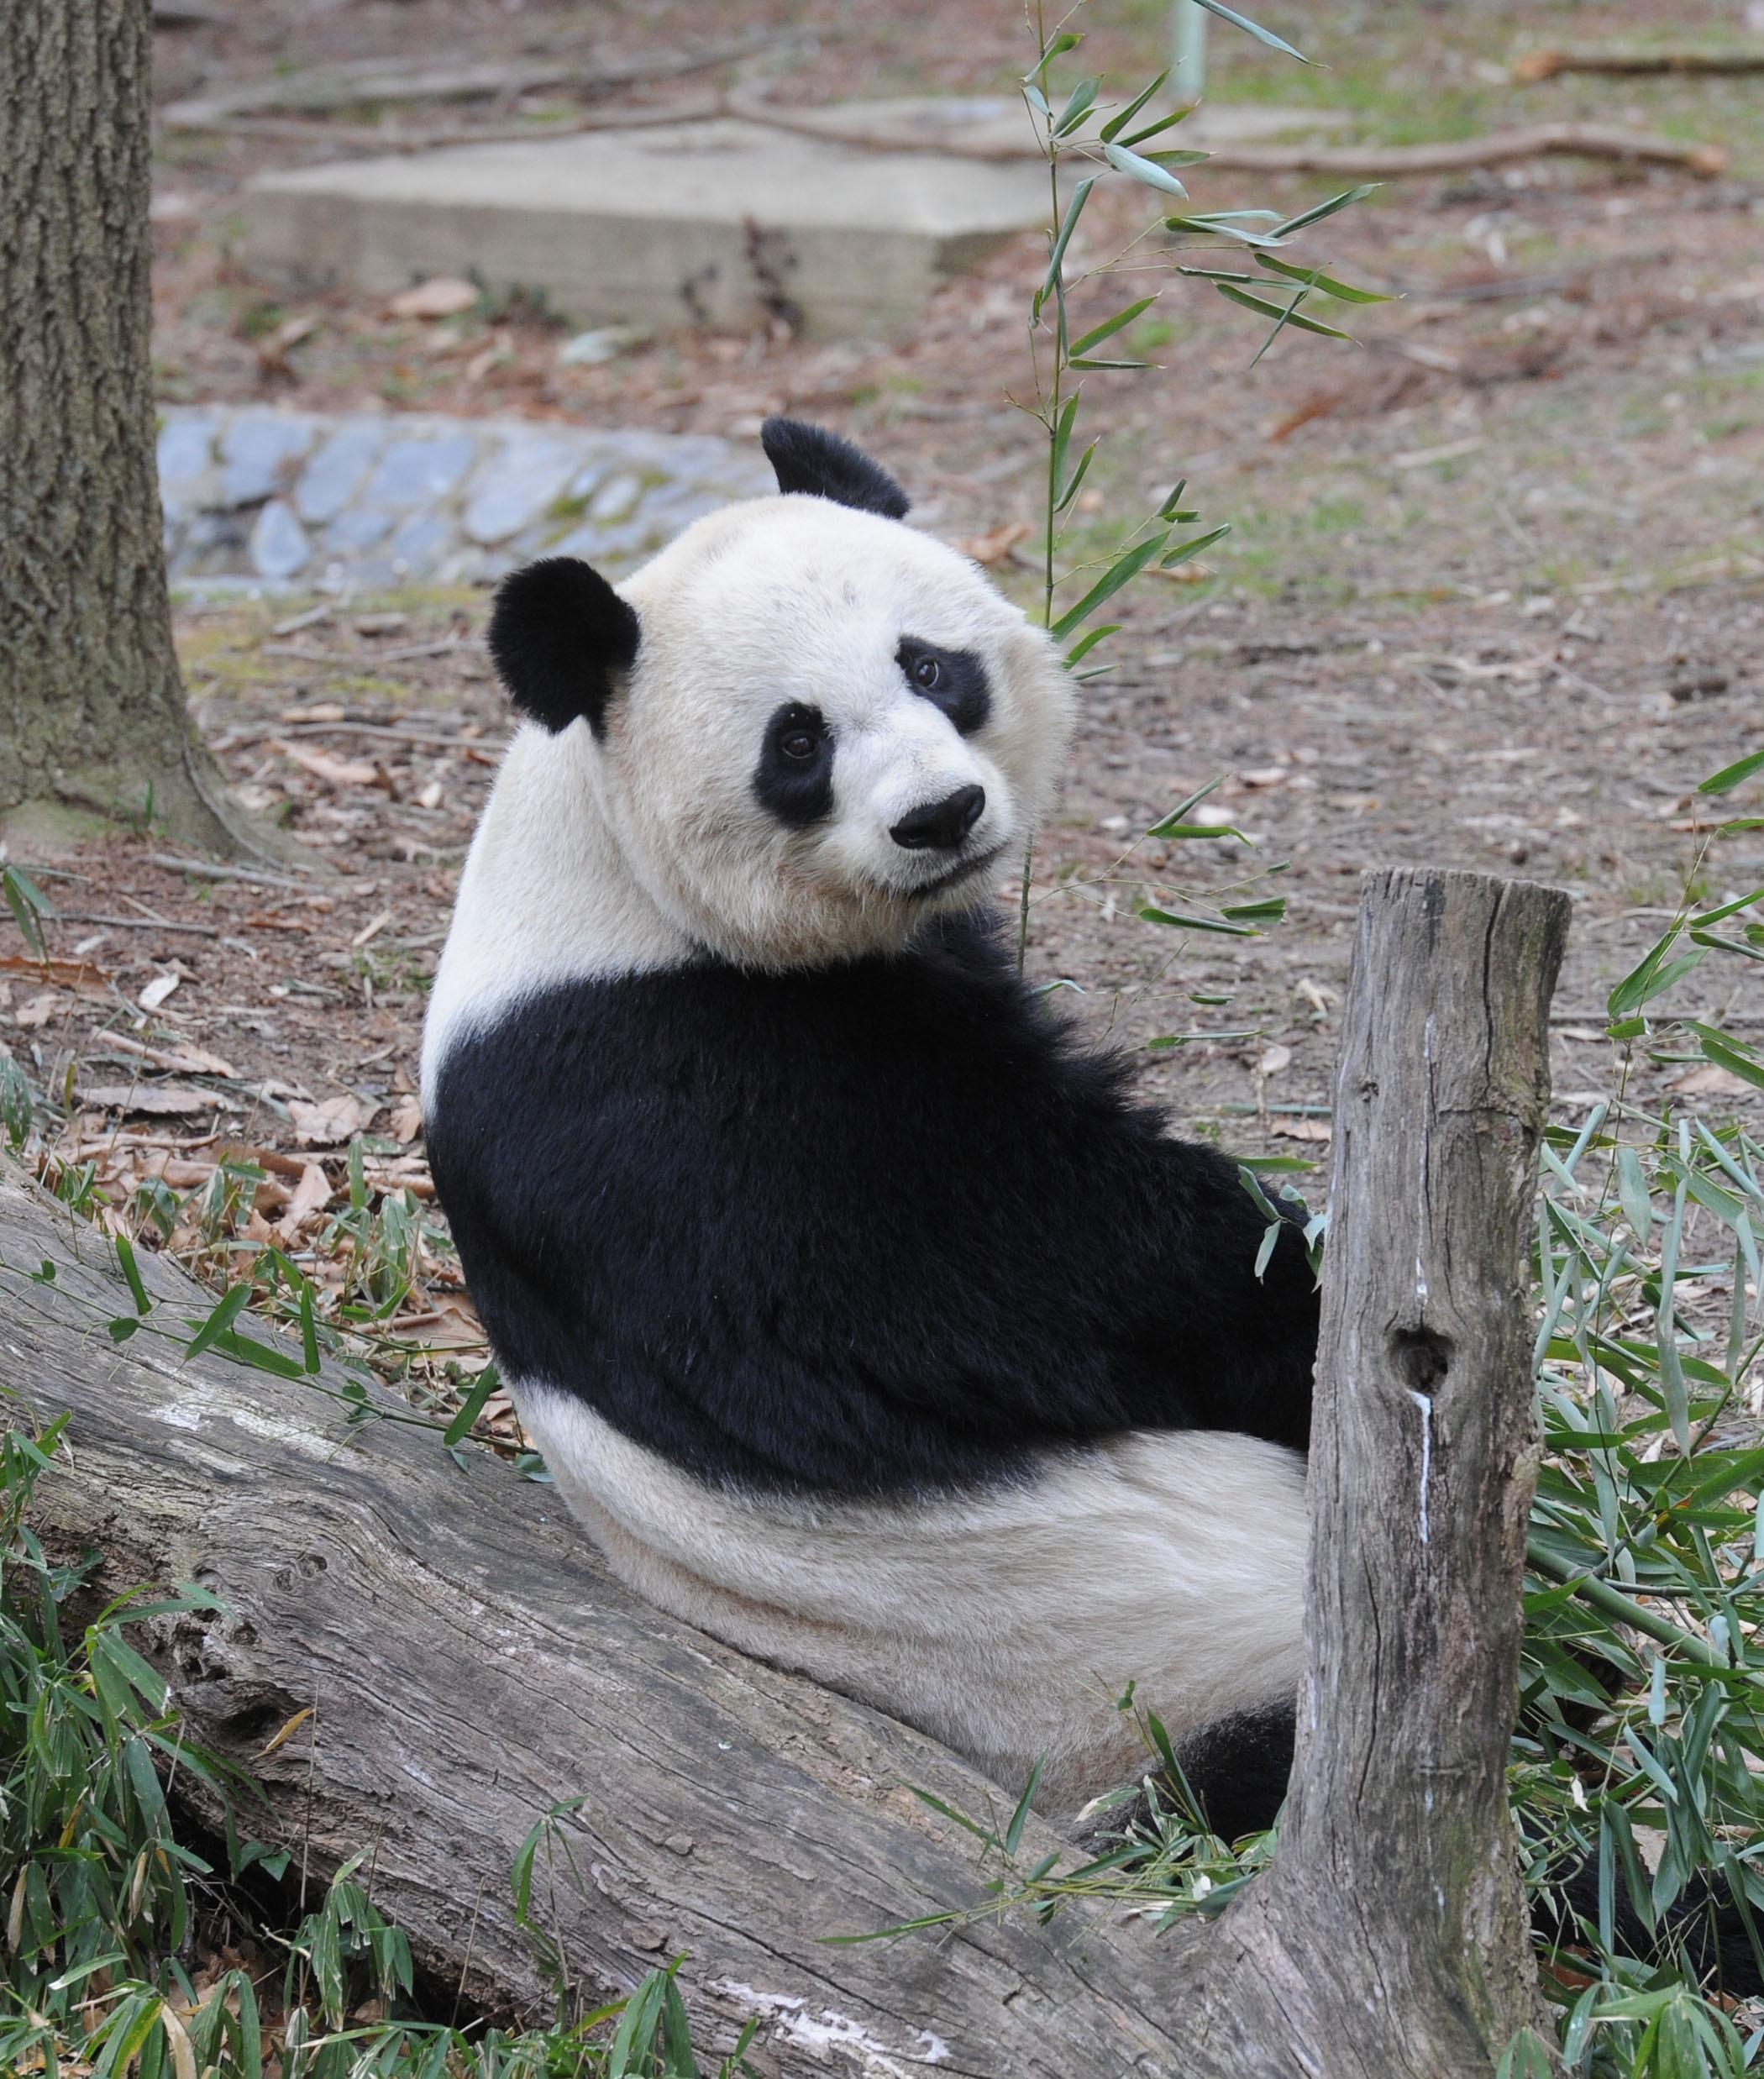 Giant Pandas Tian Tian and Mei Xiang at Zoo in Washington DC